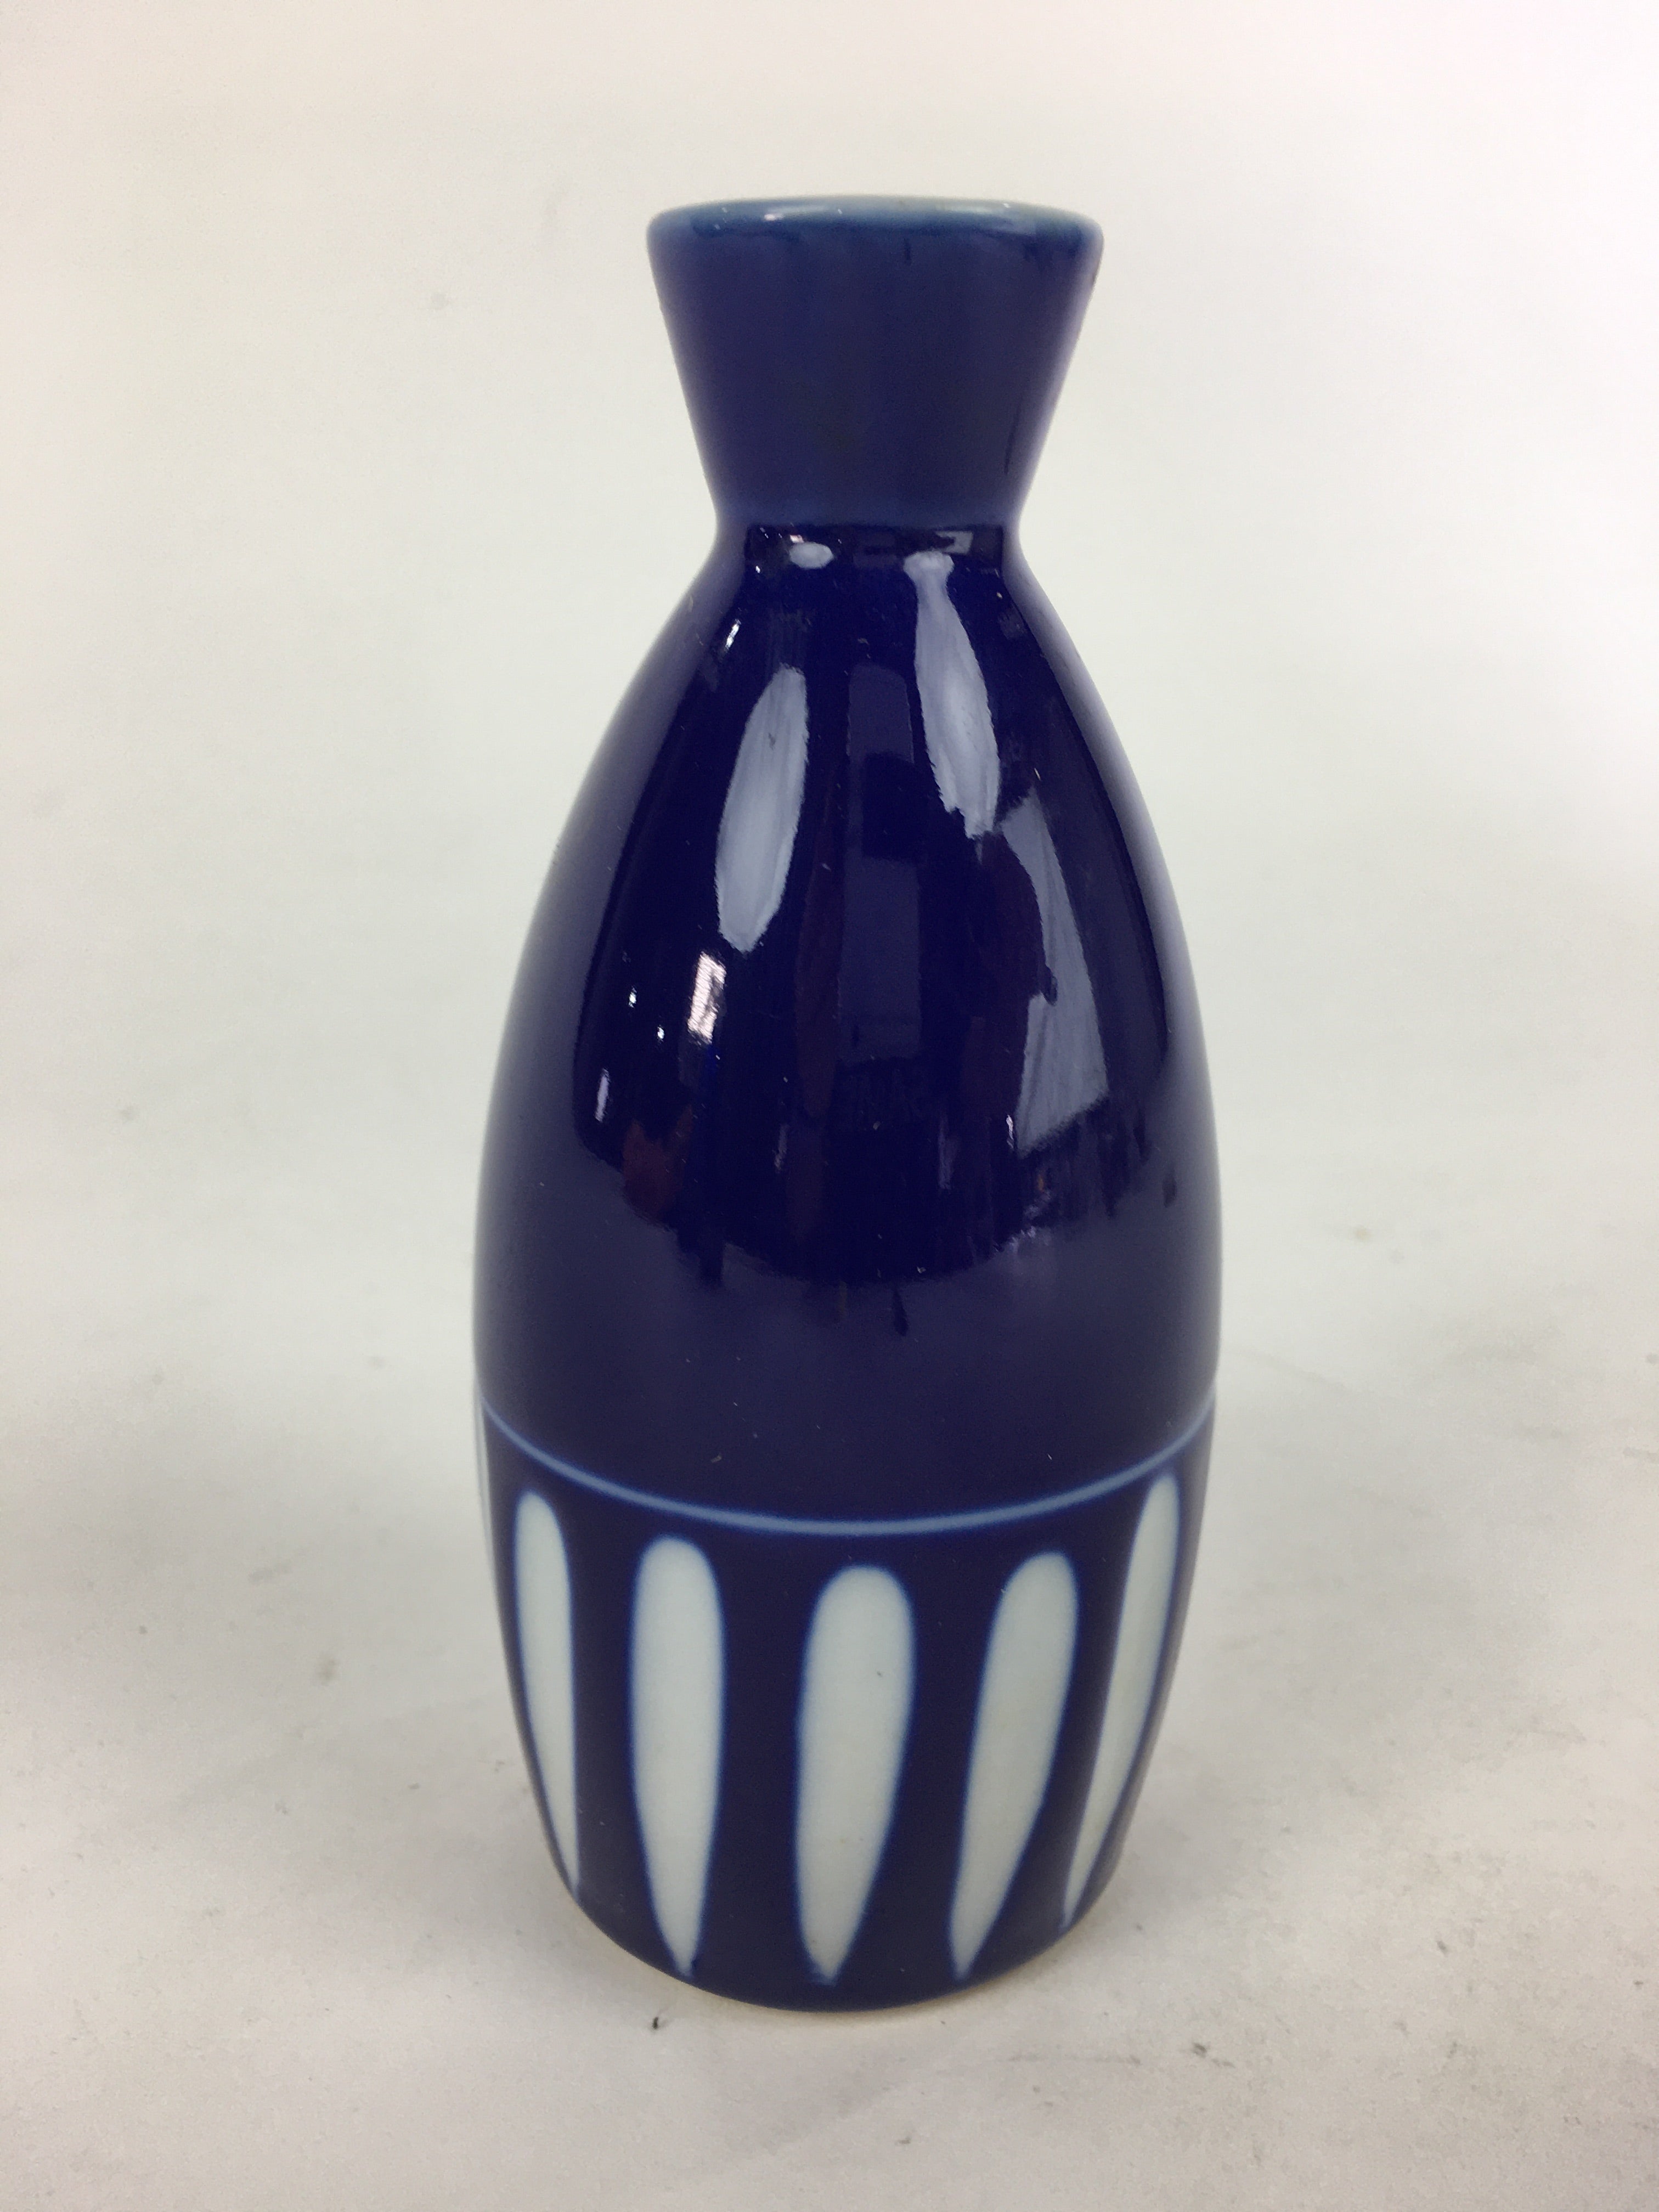 Japanese Porcelain Sake Bottle Vtg Blue White Shinogi Design Tokkuri TS356